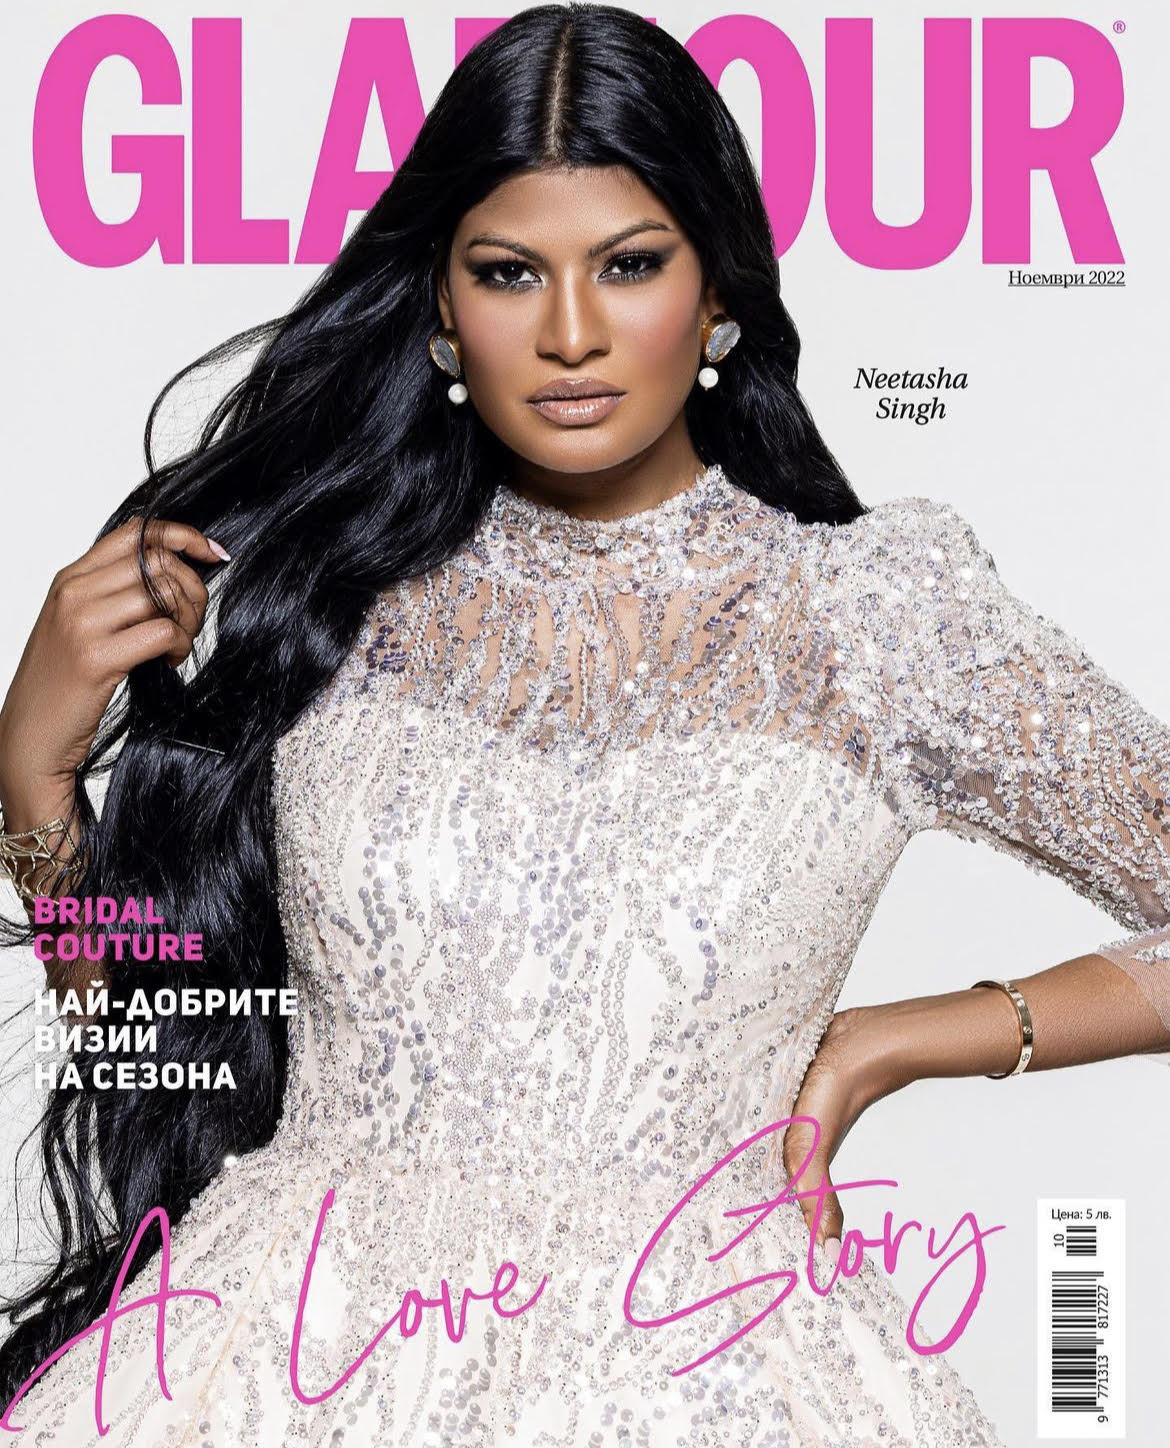 Glamour Bulgaria magazine